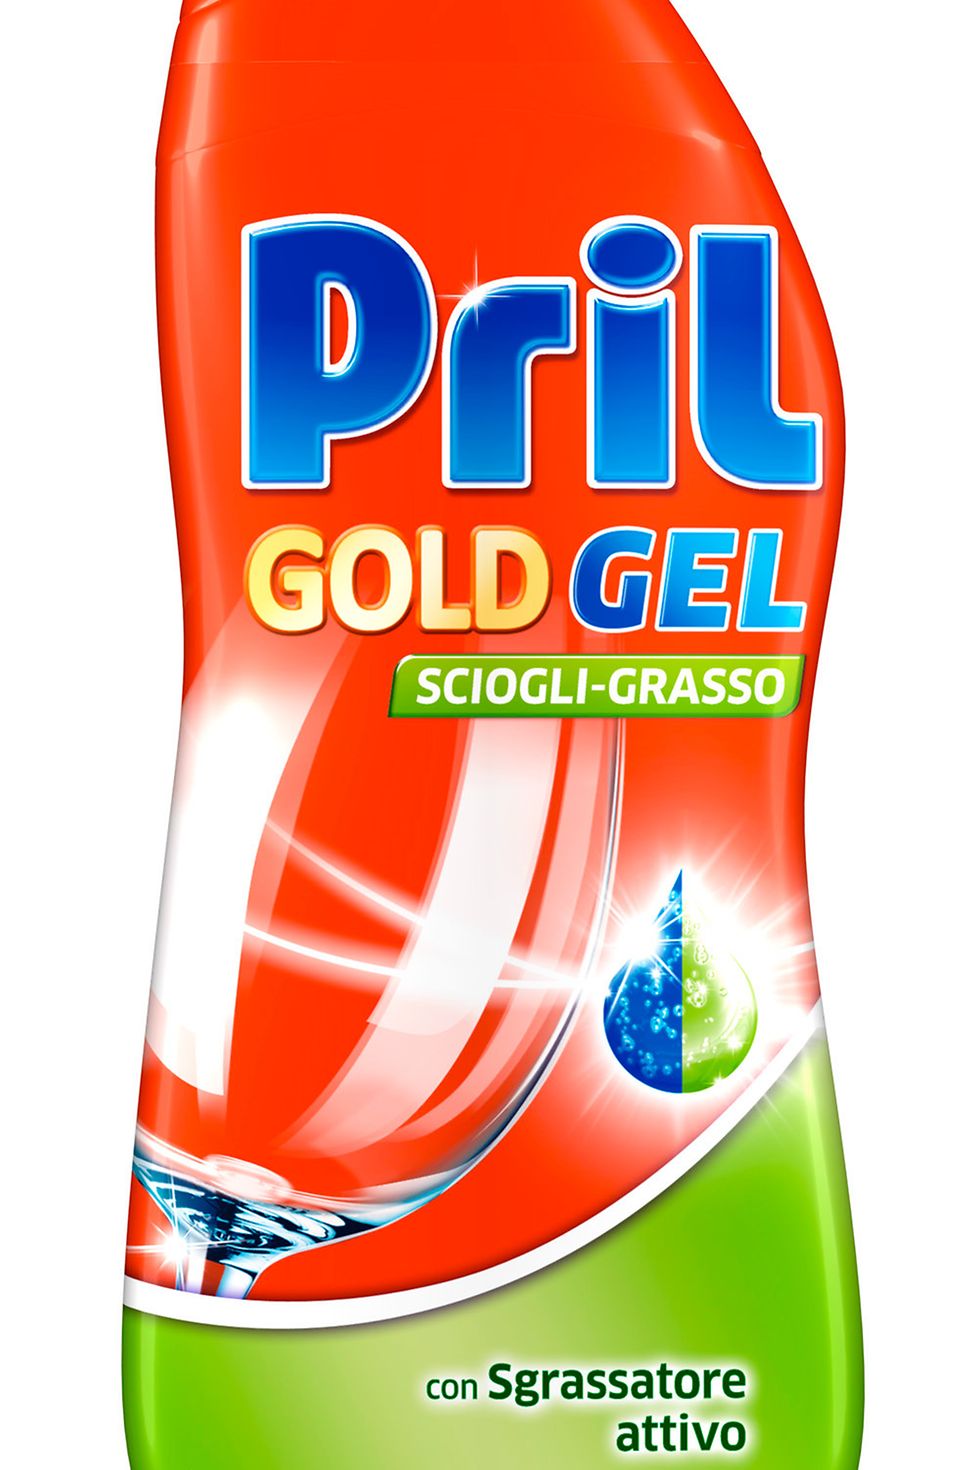 Pril Gold Gel Sciogli-grasso